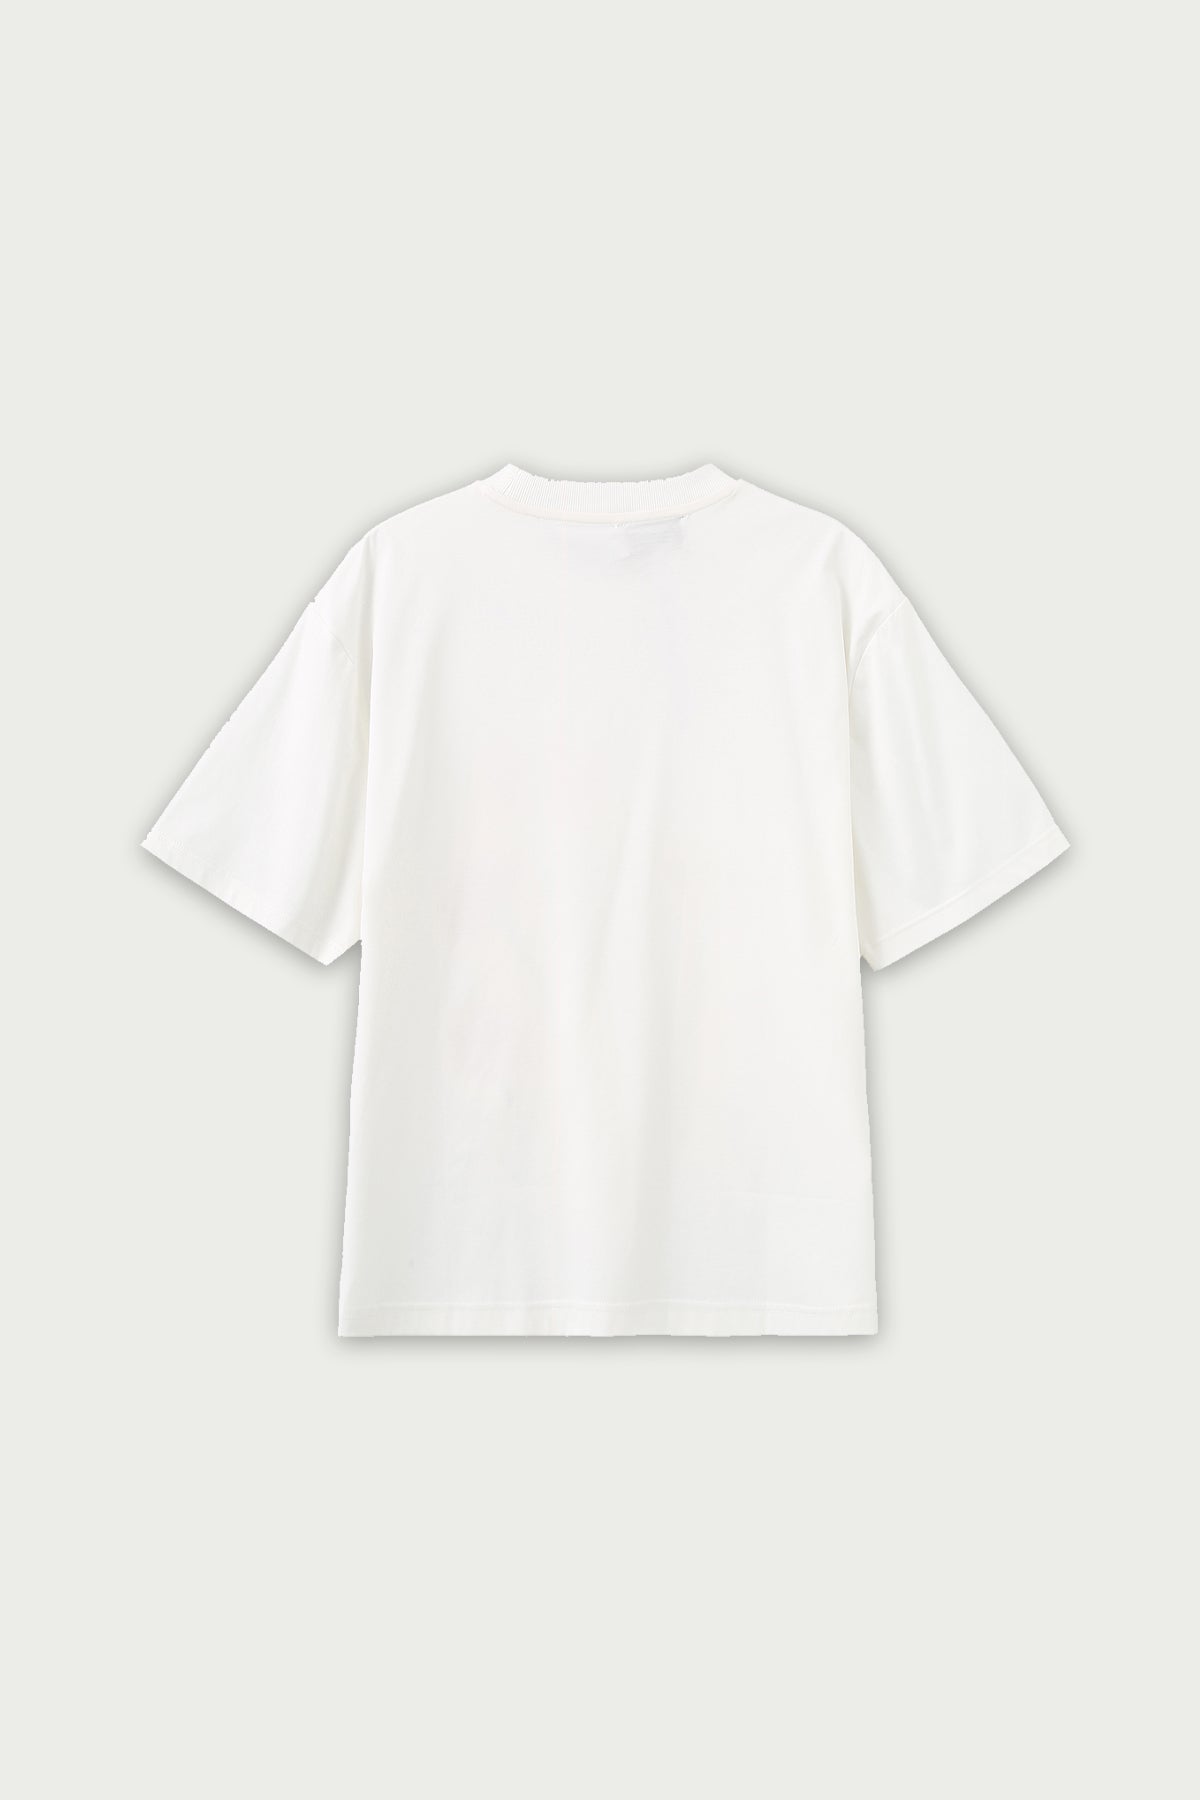 ZI II CI IEN | White Floral Pure Cotton T Shirt